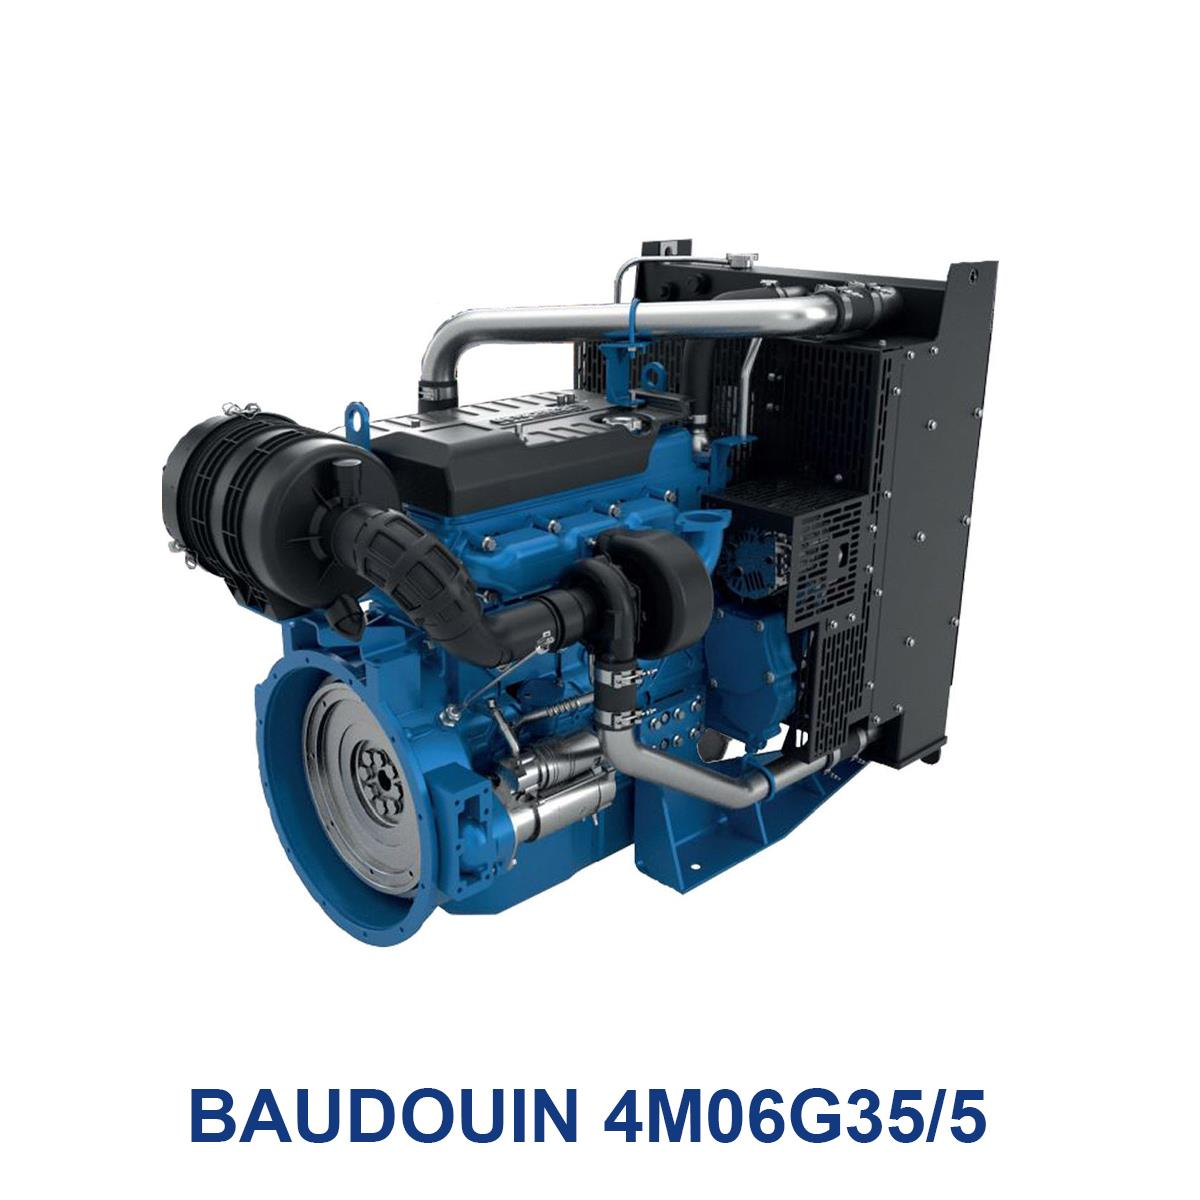 BAUDOUIN-4M06G35_5